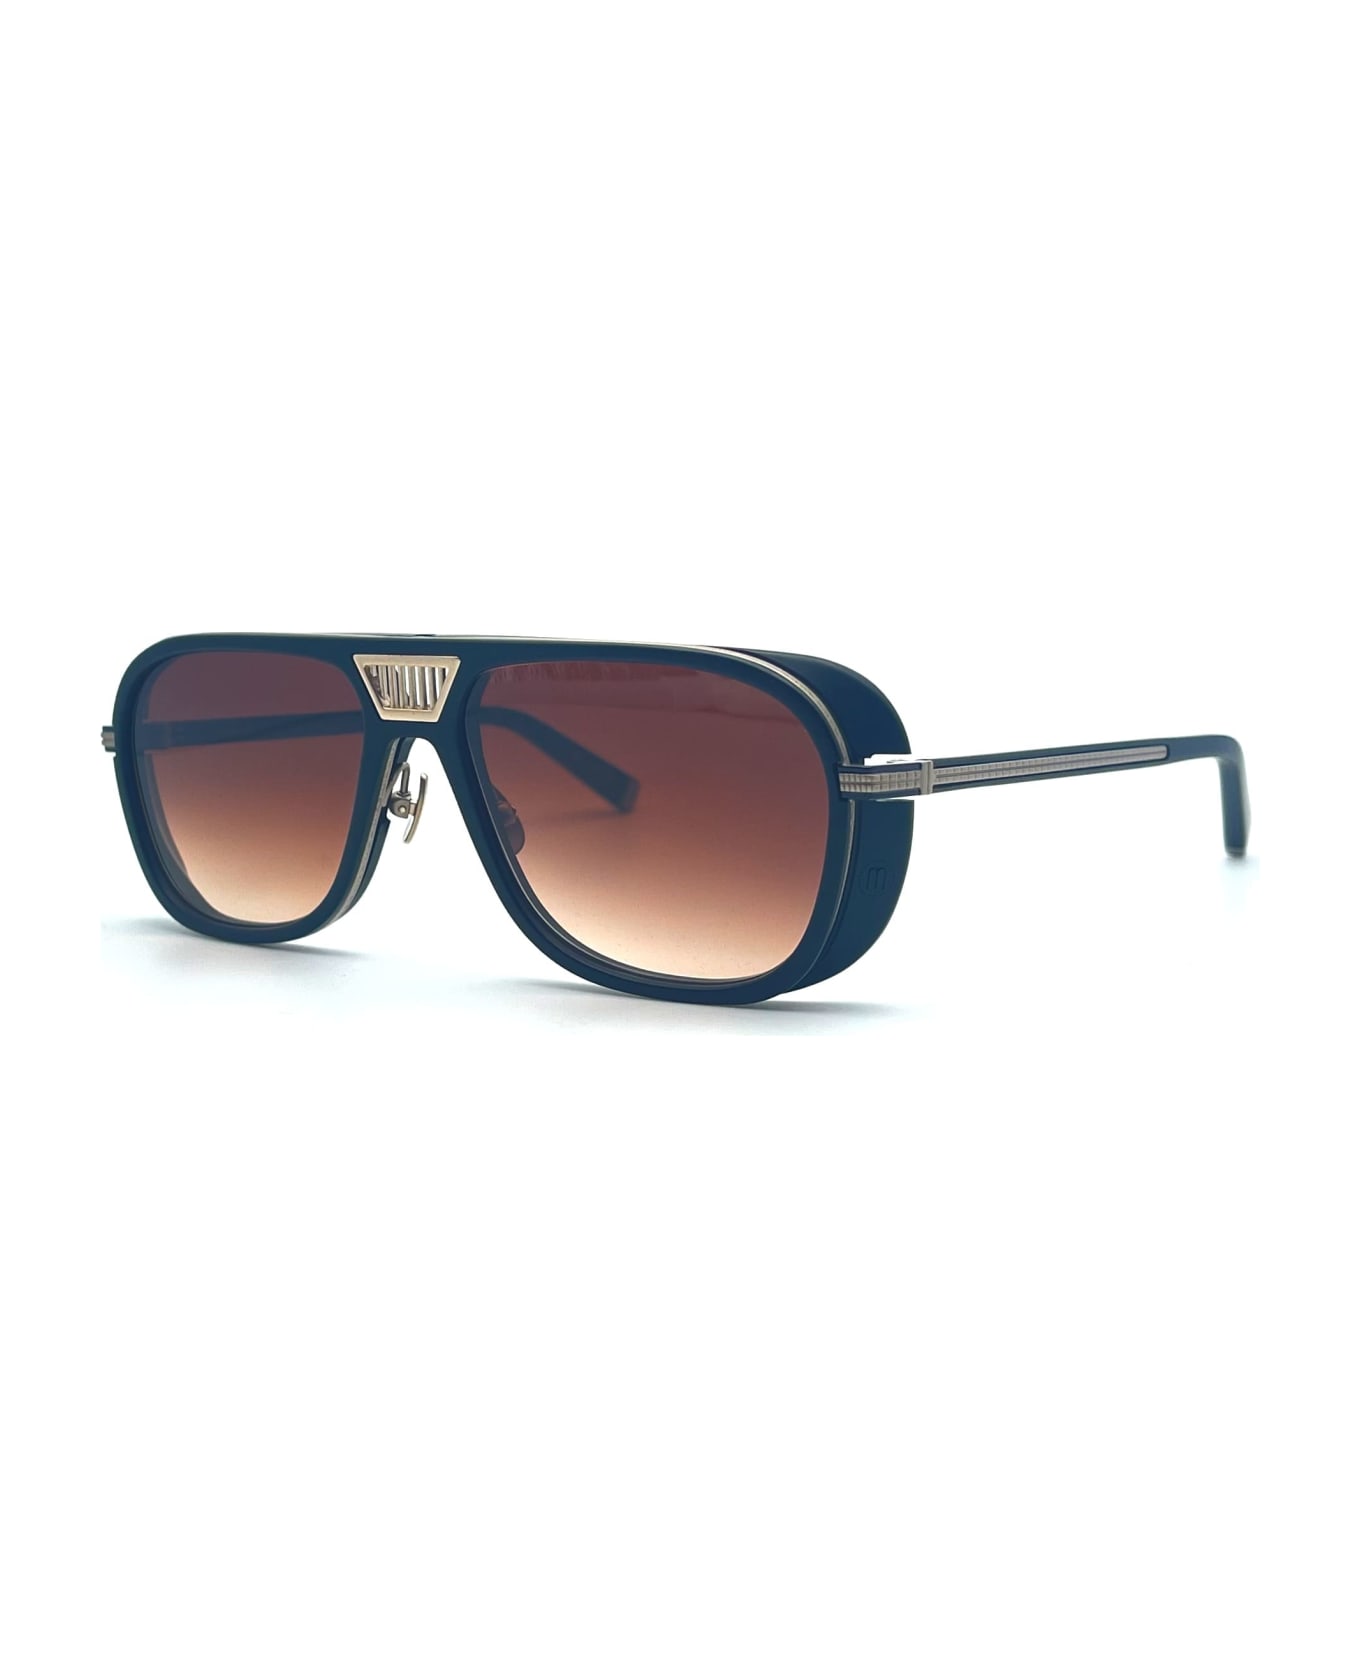 Matsuda M3023-v2 - Matte Gold Sunglasses - Matte black